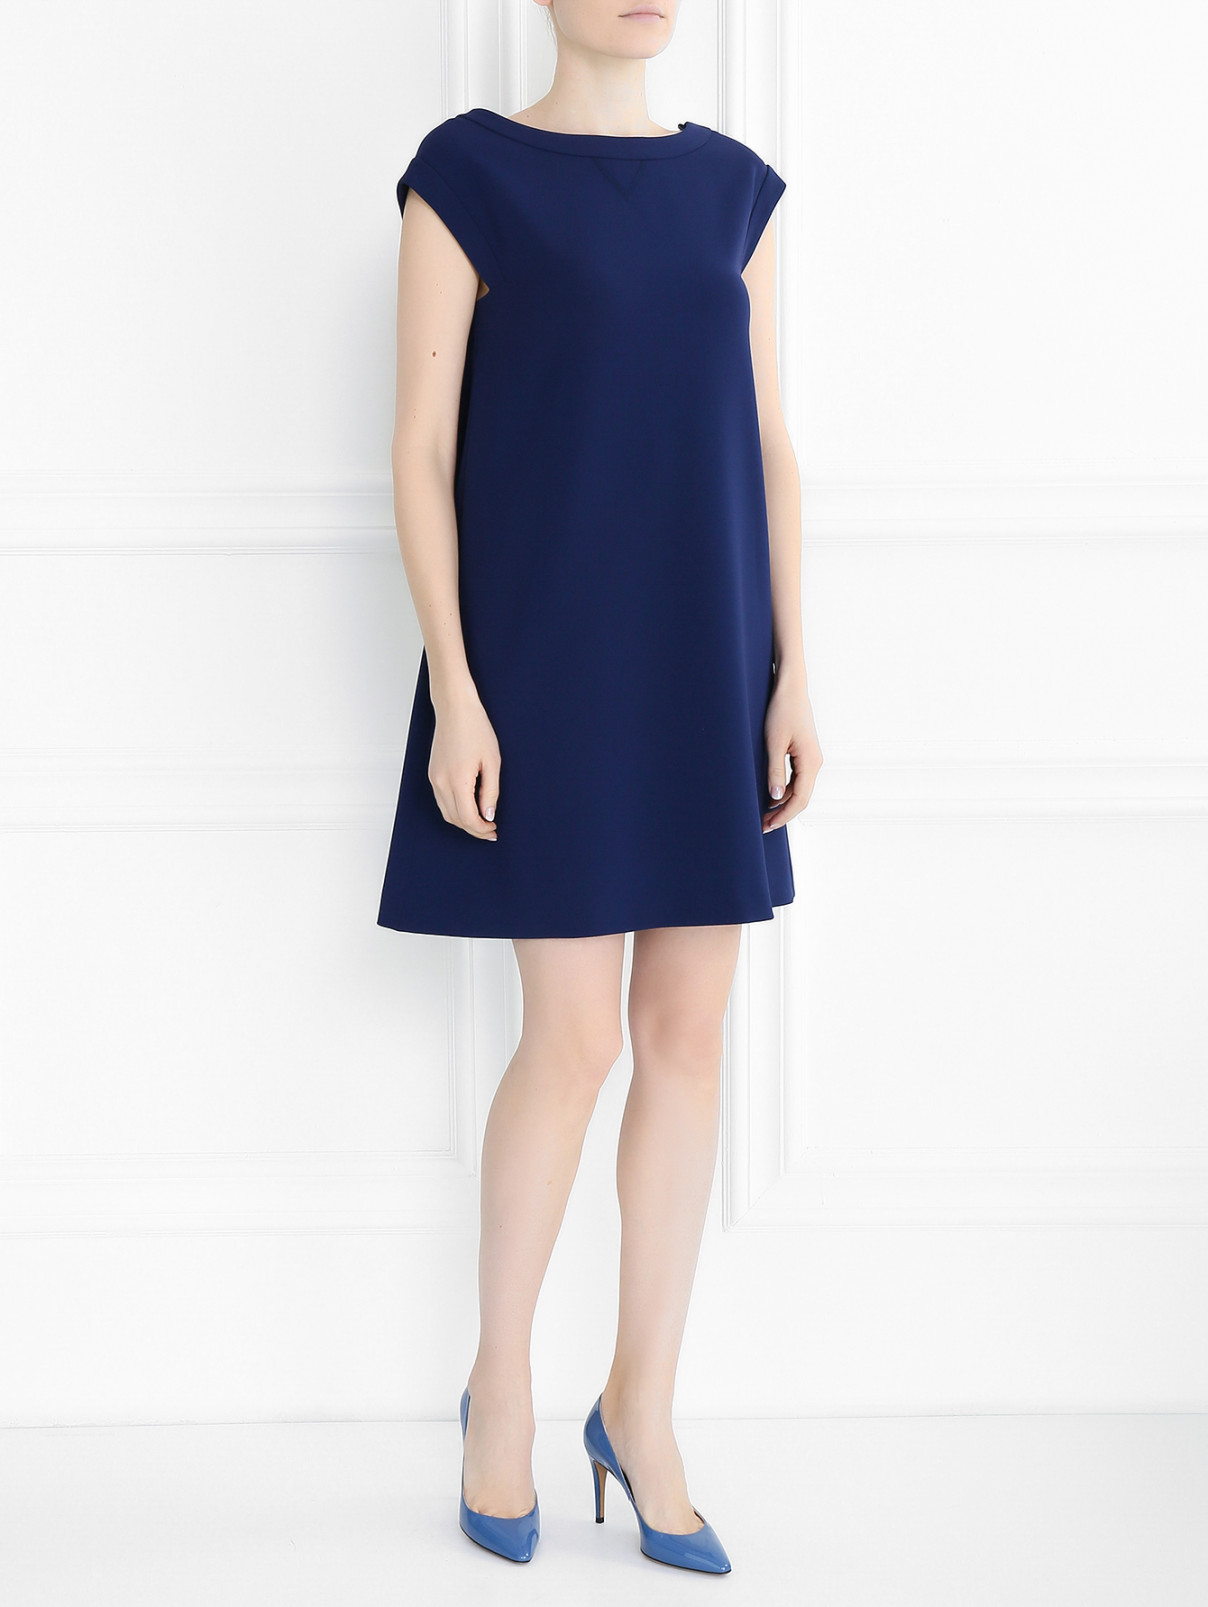 Платье без рукавов с вырезом на спине Moschino Boutique  –  Модель Общий вид  – Цвет:  Синий